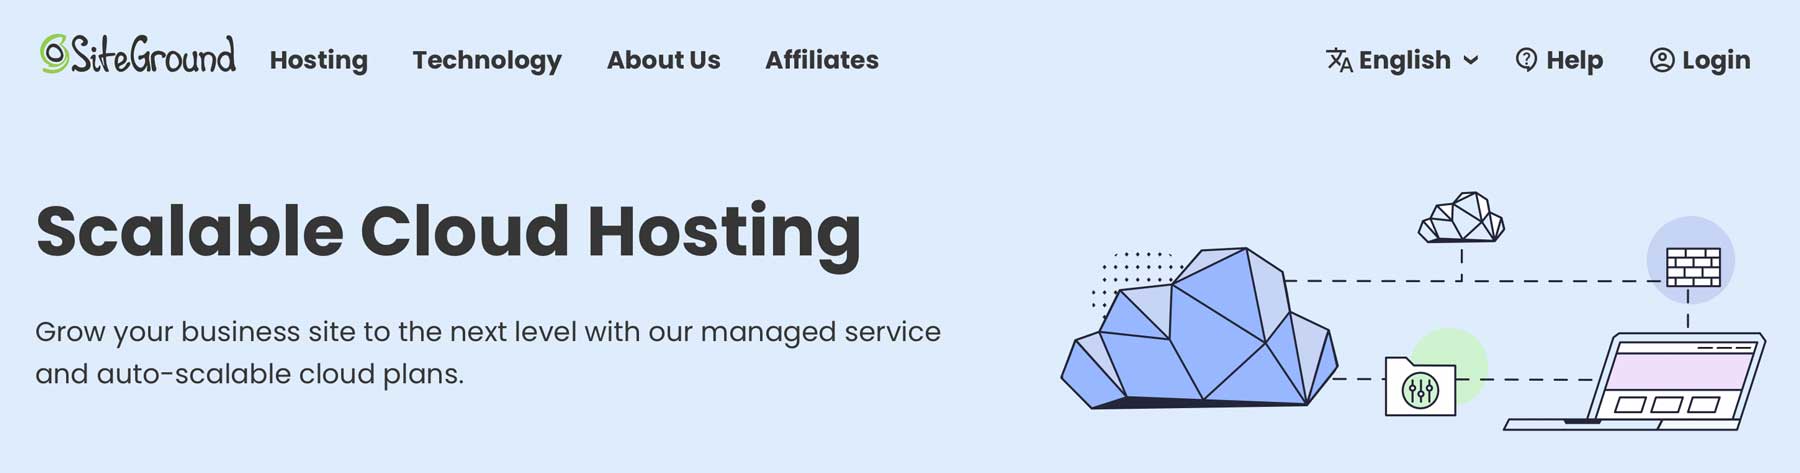 SiteGround enterprise hosting